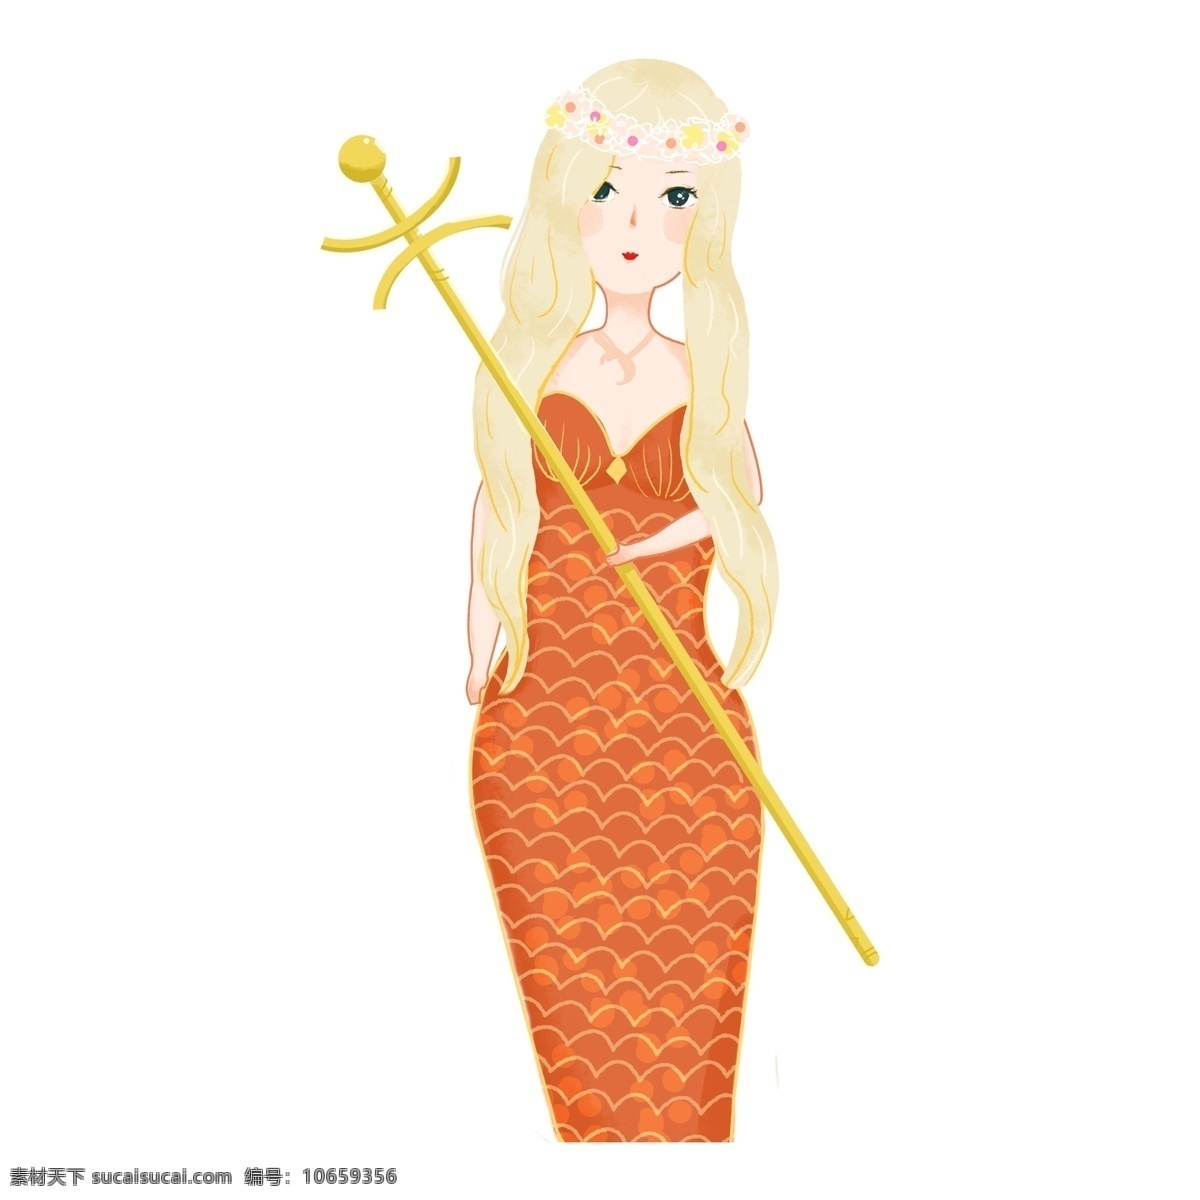 清新 手绘 可爱 美人鱼 公主 小清晰 卡通 插画 人物设计 美人鱼公主